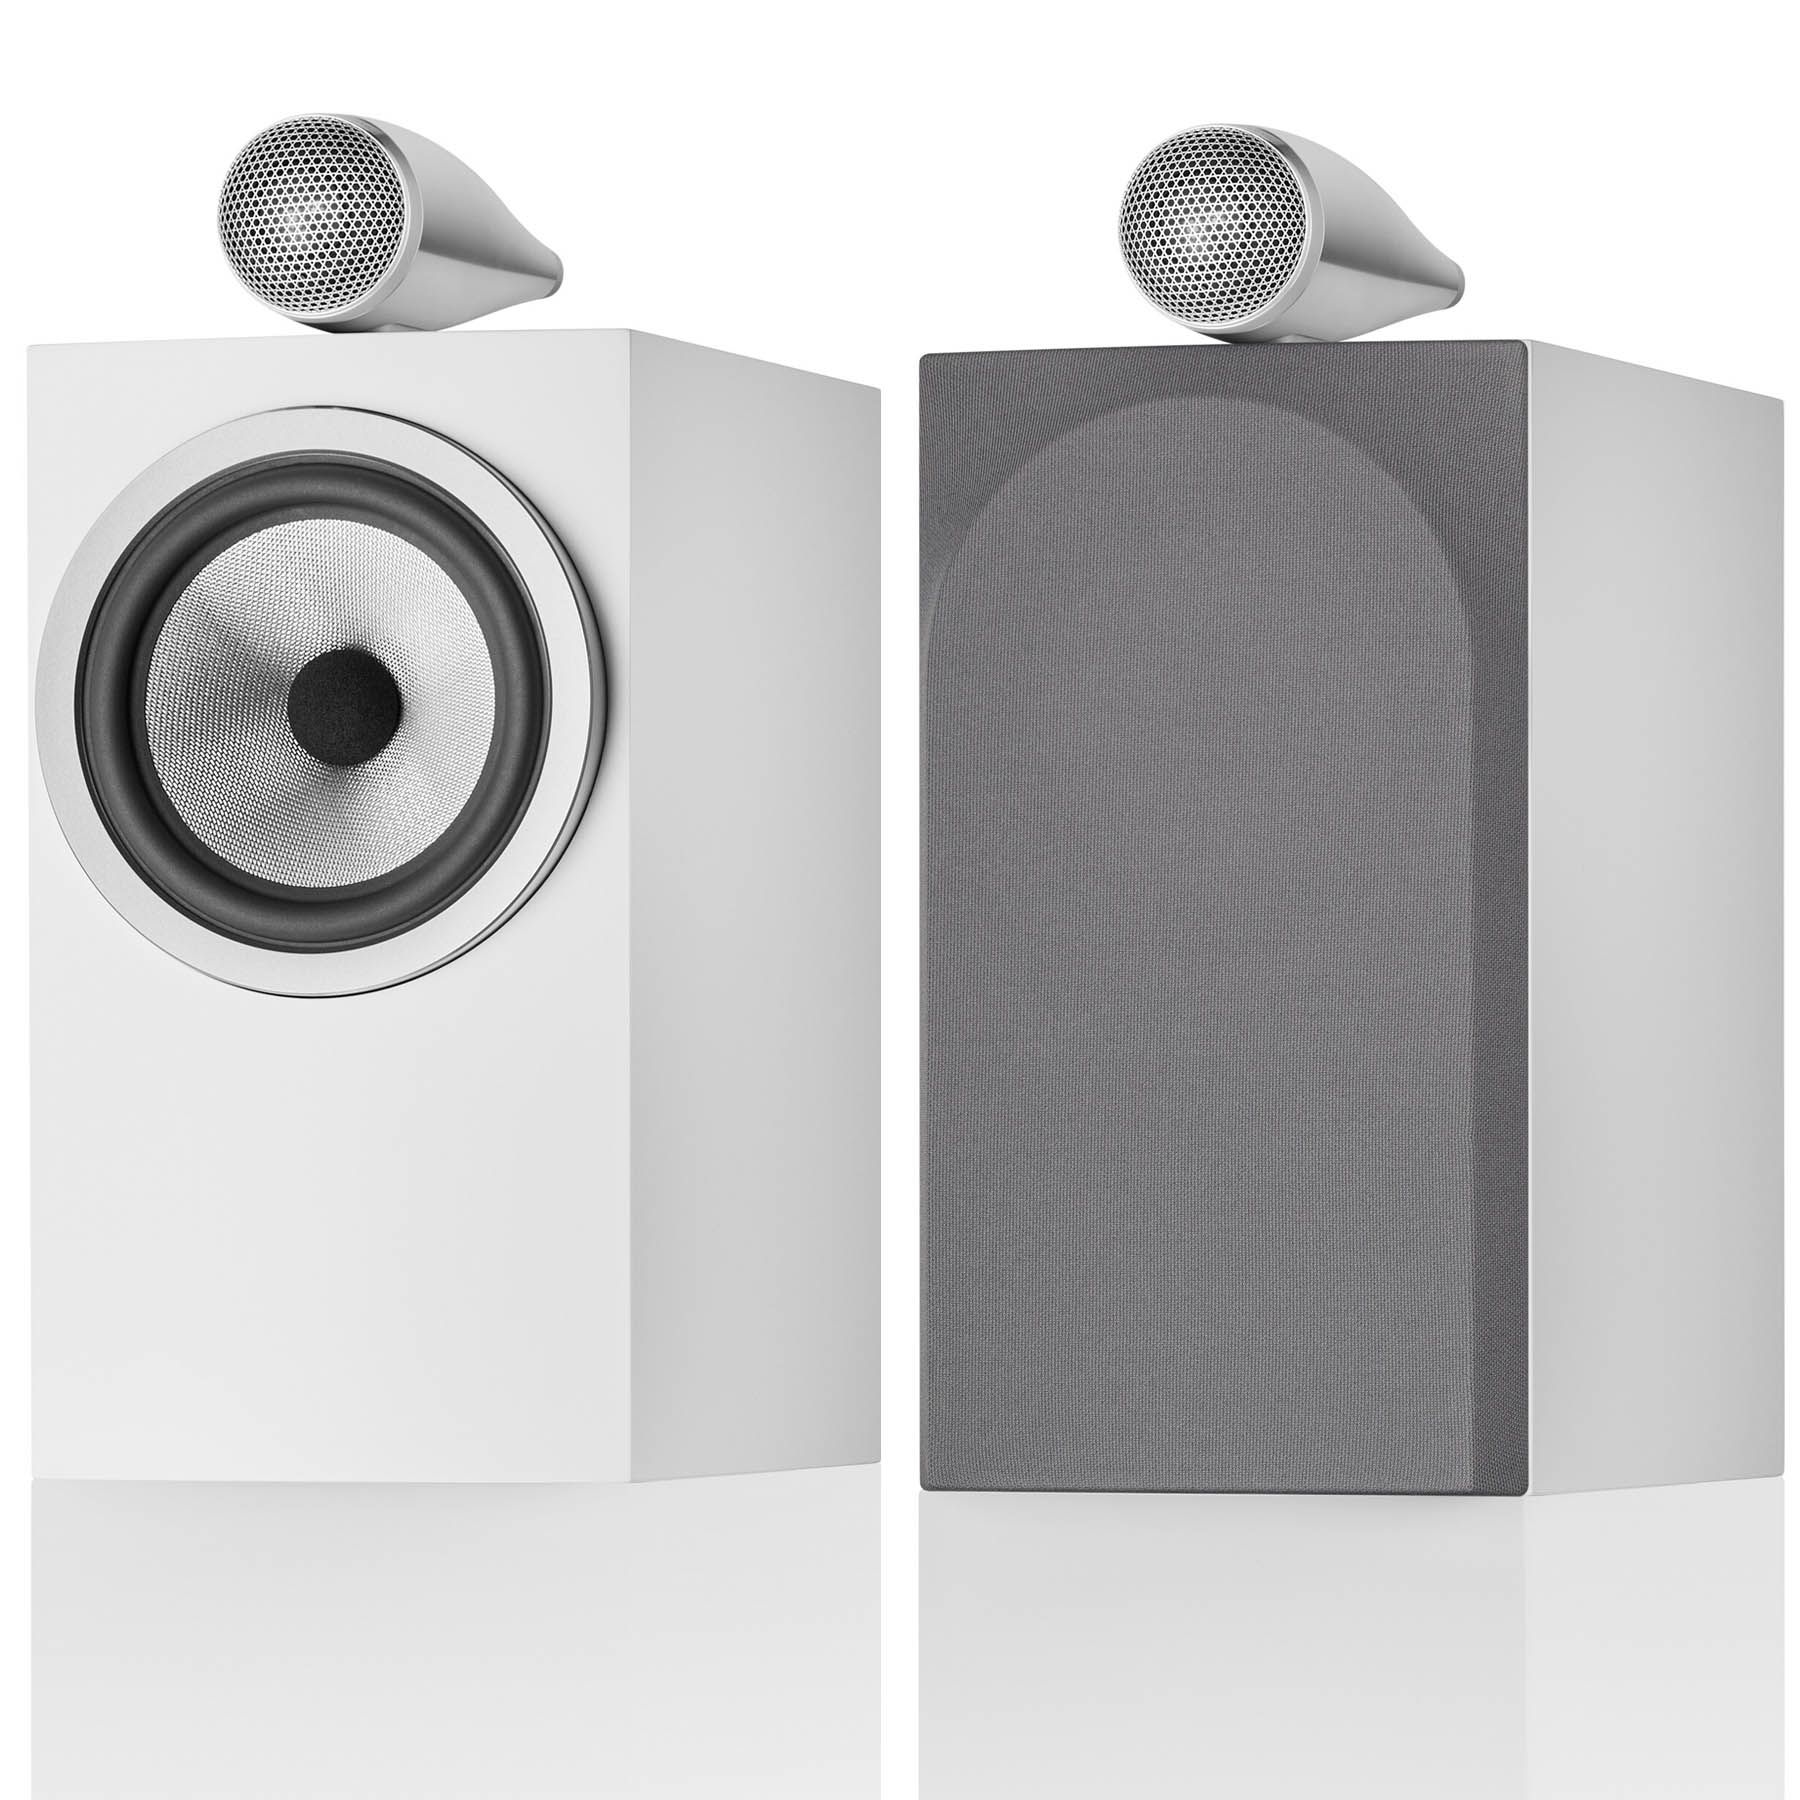 Bowers &amp; Wilkins 705 S3 pair of pedestal speakers, flawless white demo pair, Helsinki